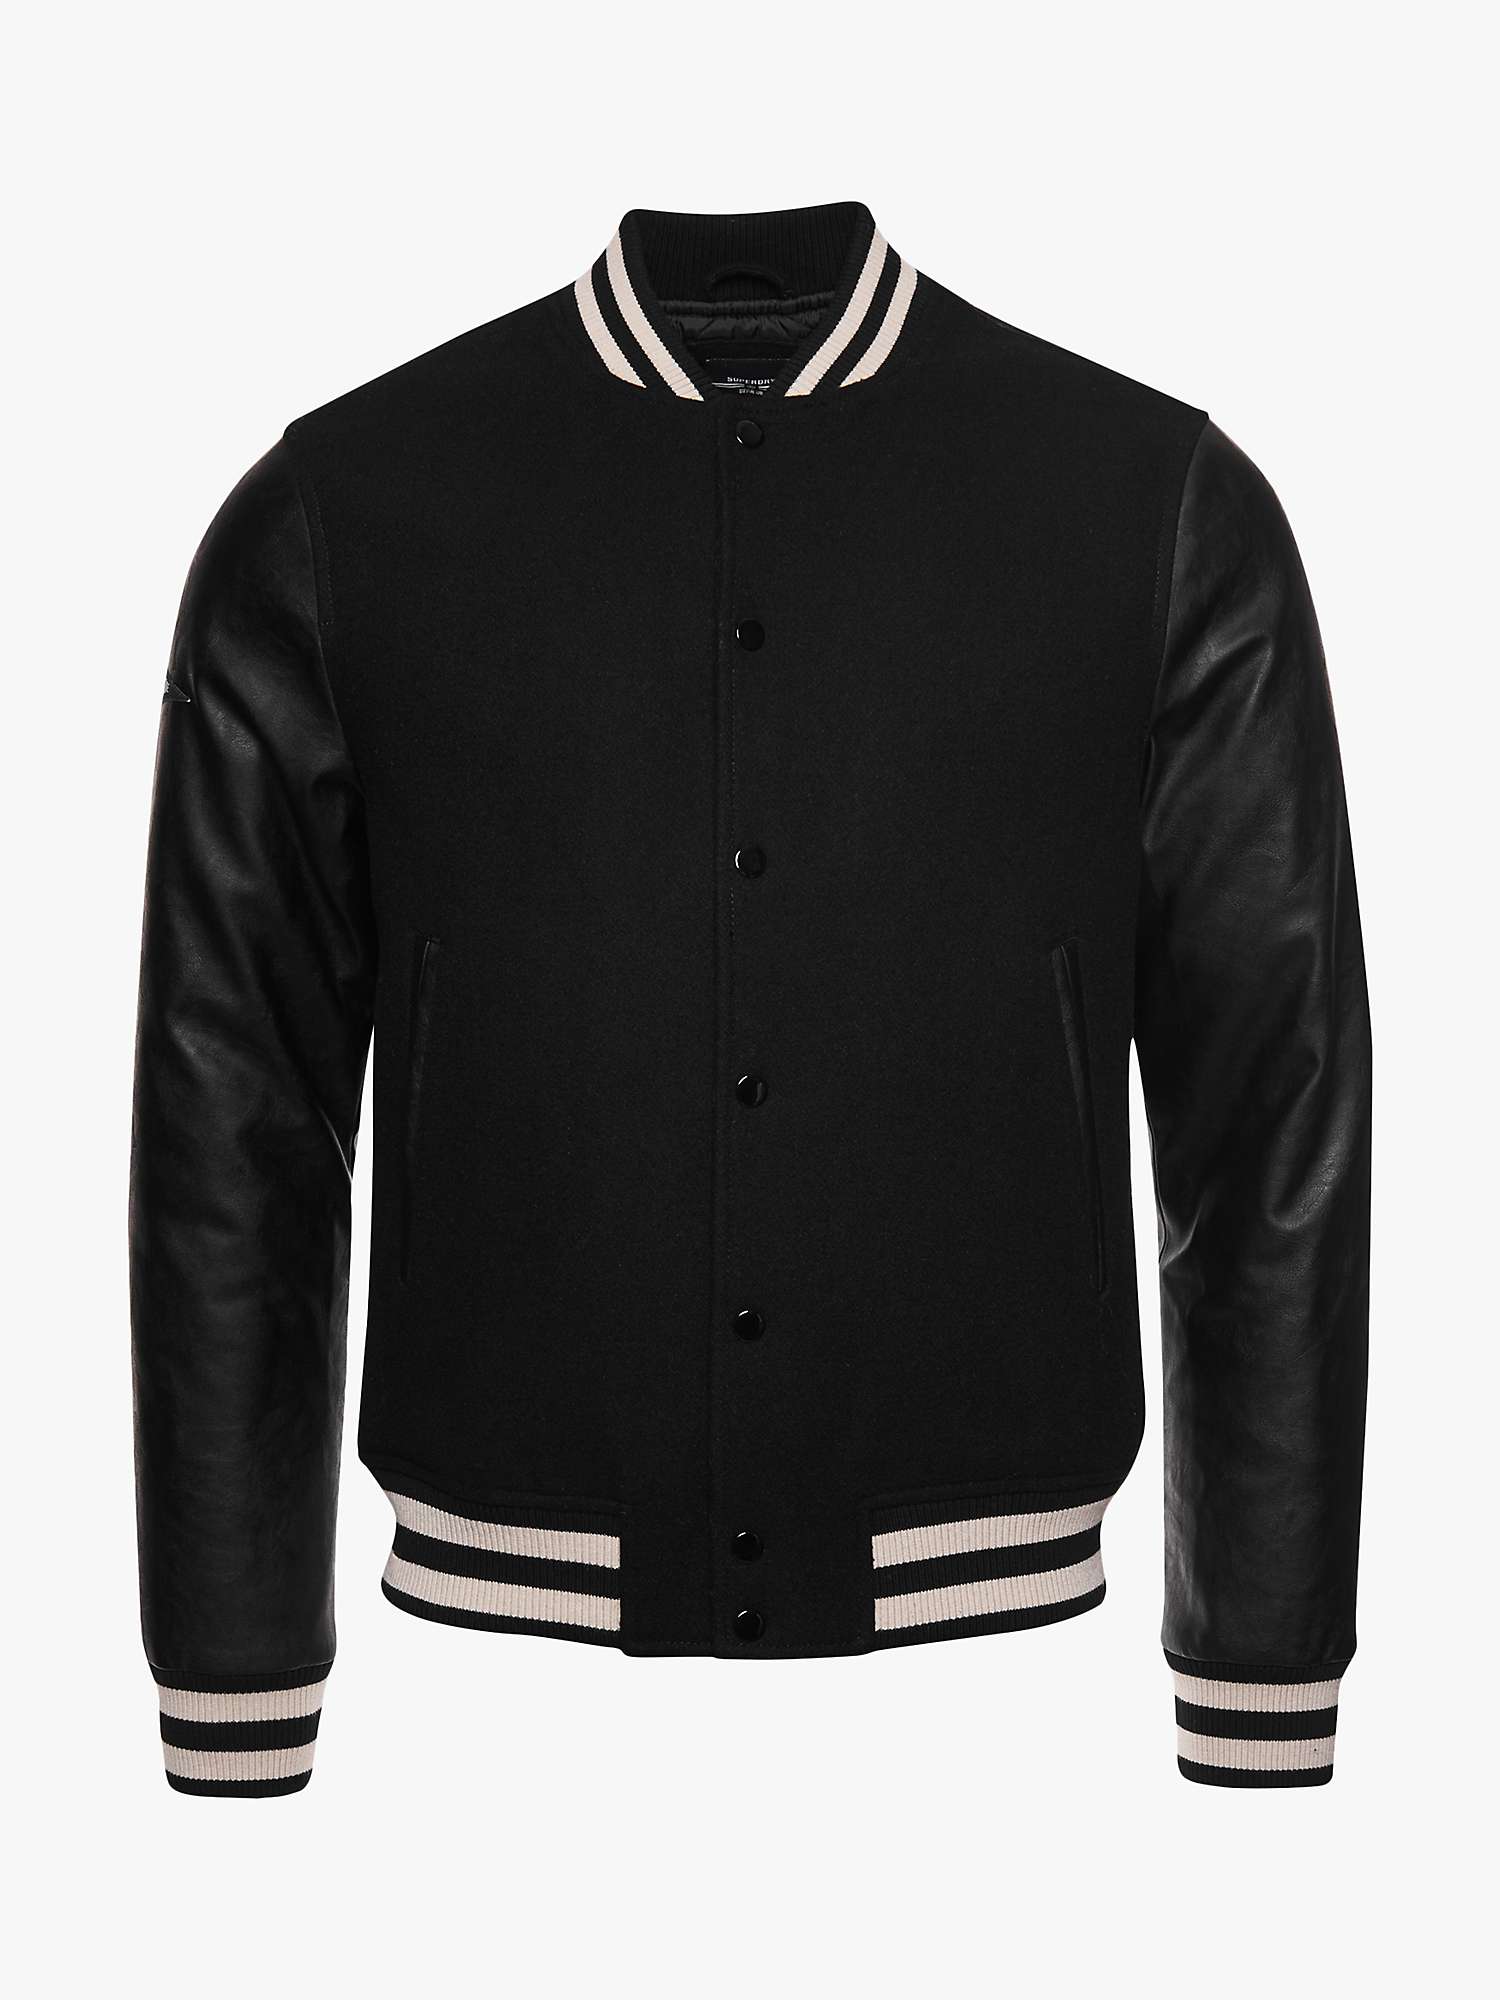 Buy Superdry College Varsity Jacket, Jet Black Online at johnlewis.com